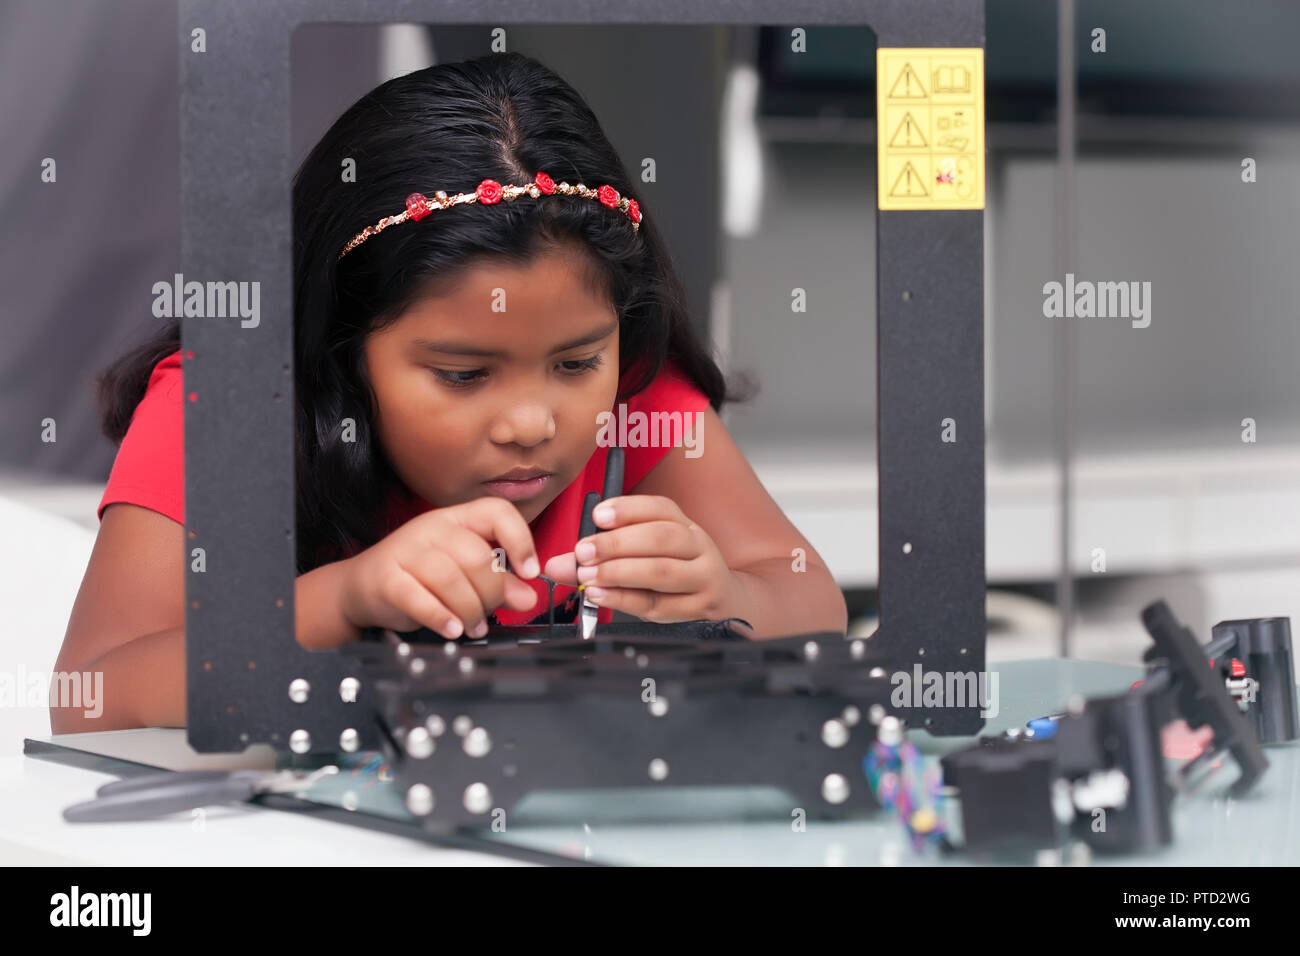 Jeune fille, 8 ans, de l'assemblage d'une imprimante 3D kit pour endiguer summer camp Banque D'Images